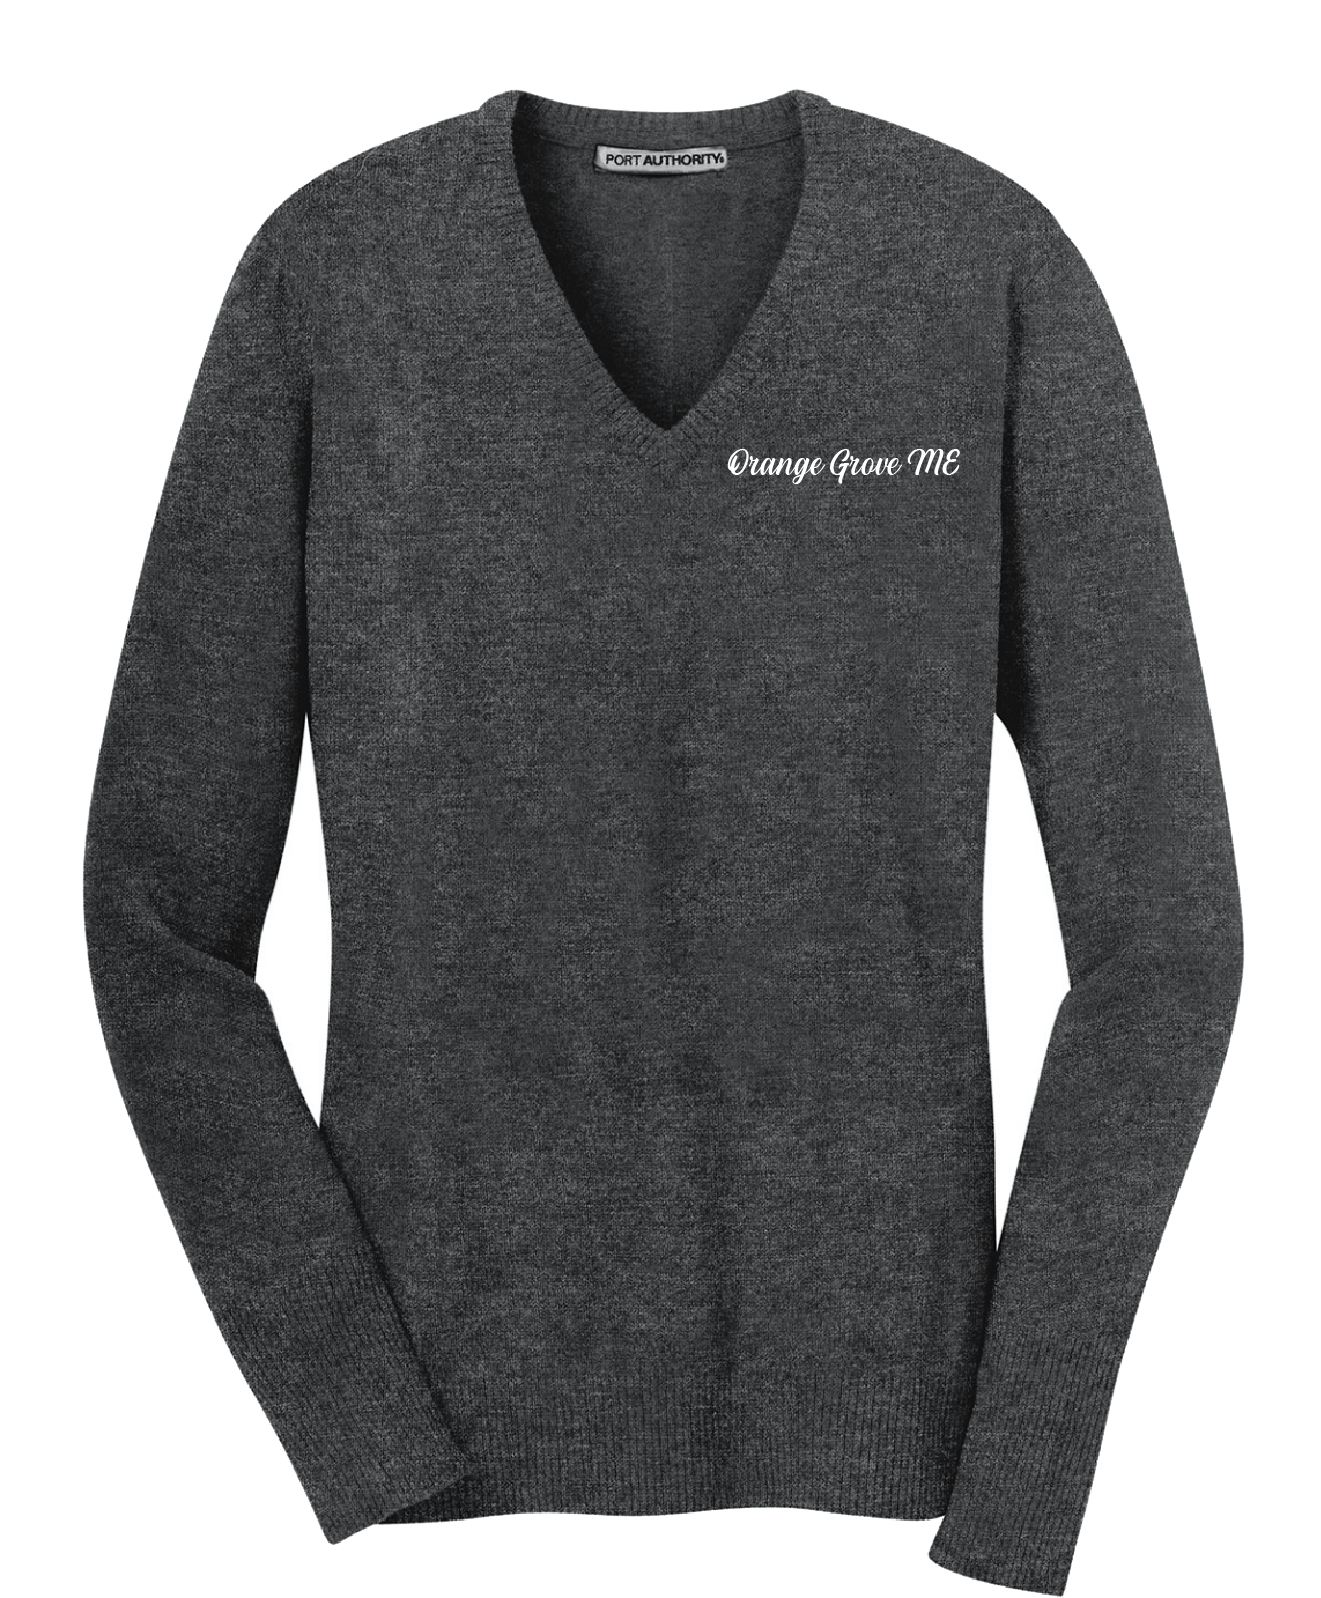 Orange Grove ME - Port Authority® Ladies V-Neck Sweater